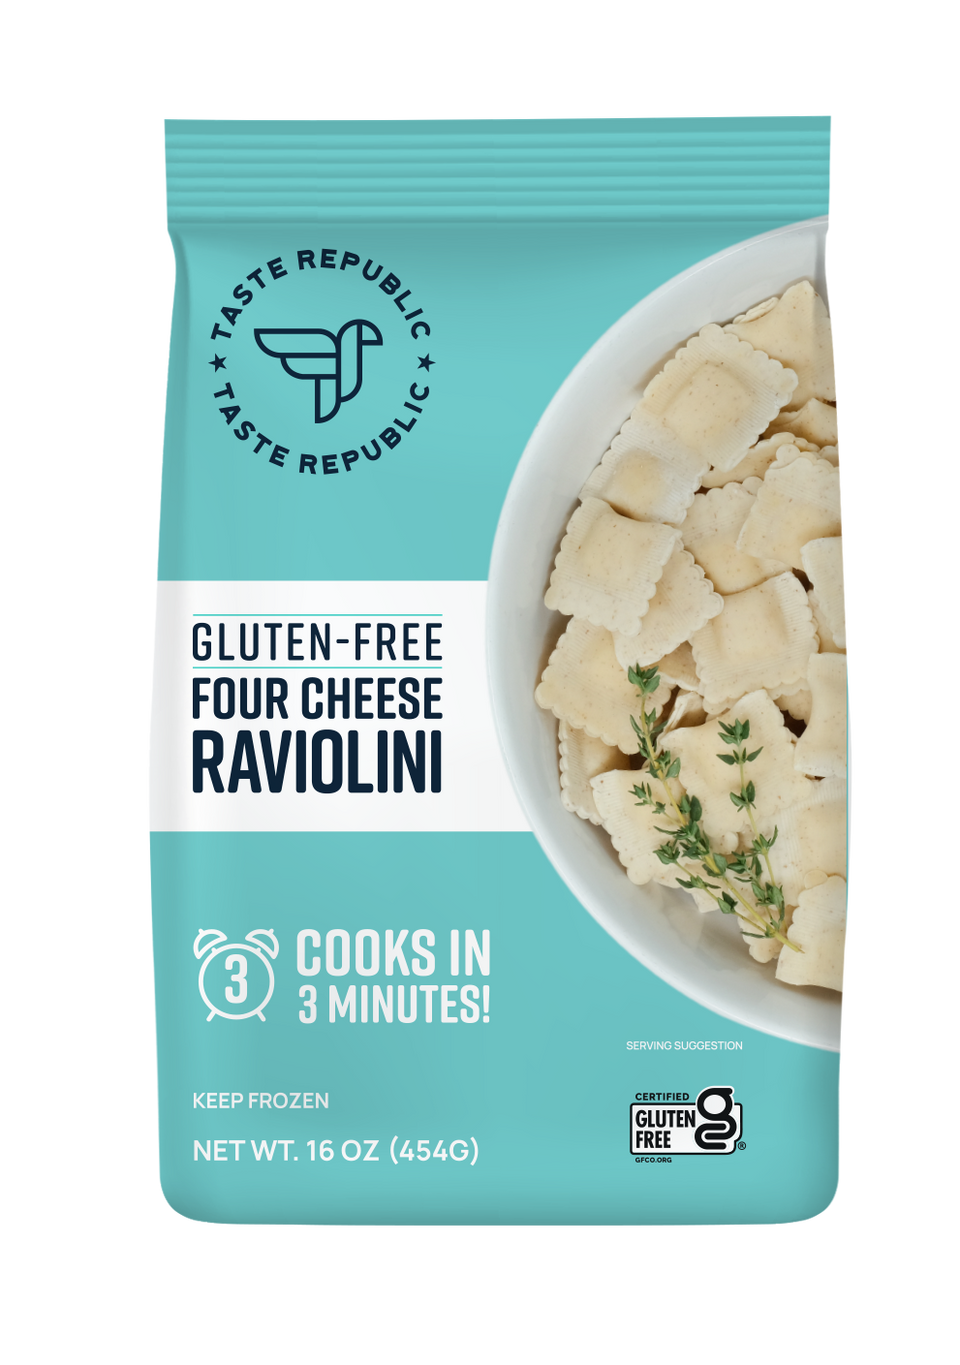 Family-Size Frozen Gluten-Free Four Cheese Raviolini, 16oz